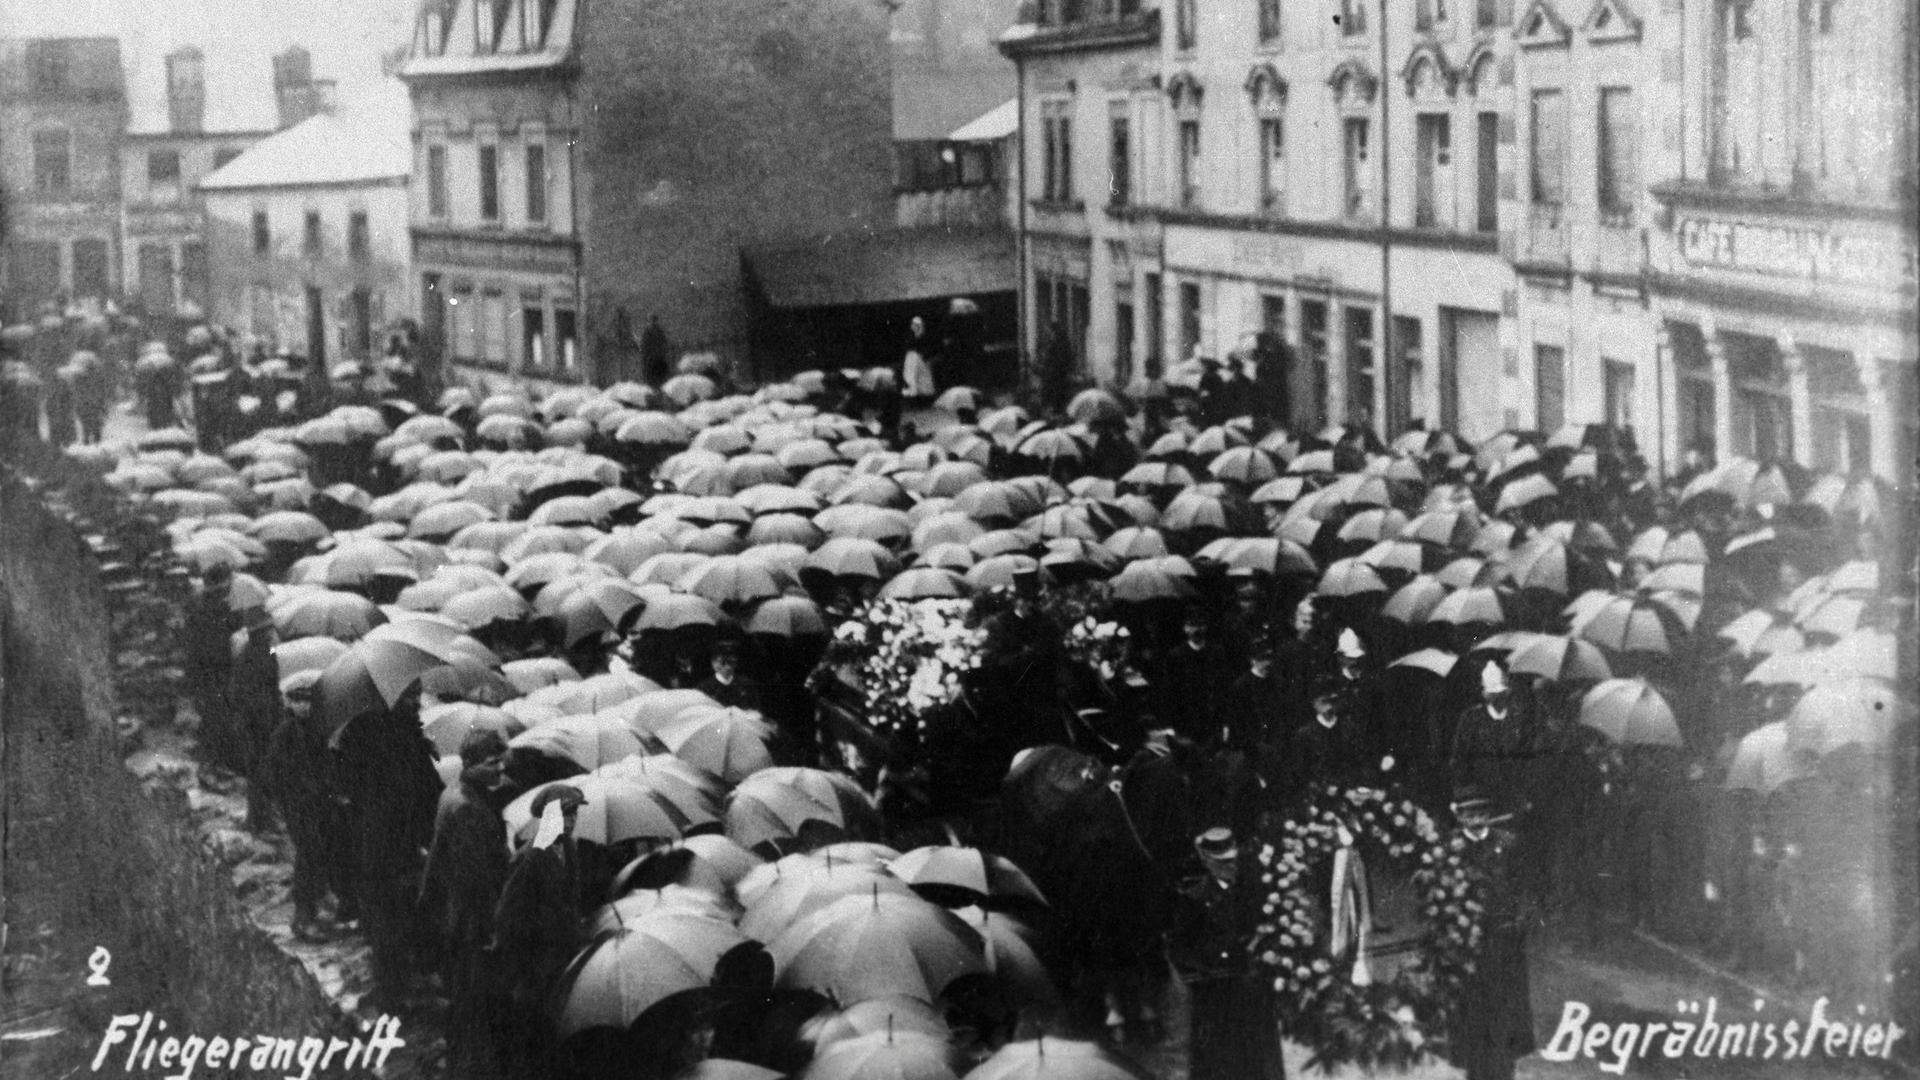 Le samedi suivant l'attaque de Bonnevoie, le 30 mars 1918, cinq des victimes de l'aviation furent enterrées à Bonnevoie. Outre des centaines de citoyens, des représentants de la famille grand-ducale et du gouvernement rendirent un dernier hommage aux victimes. 